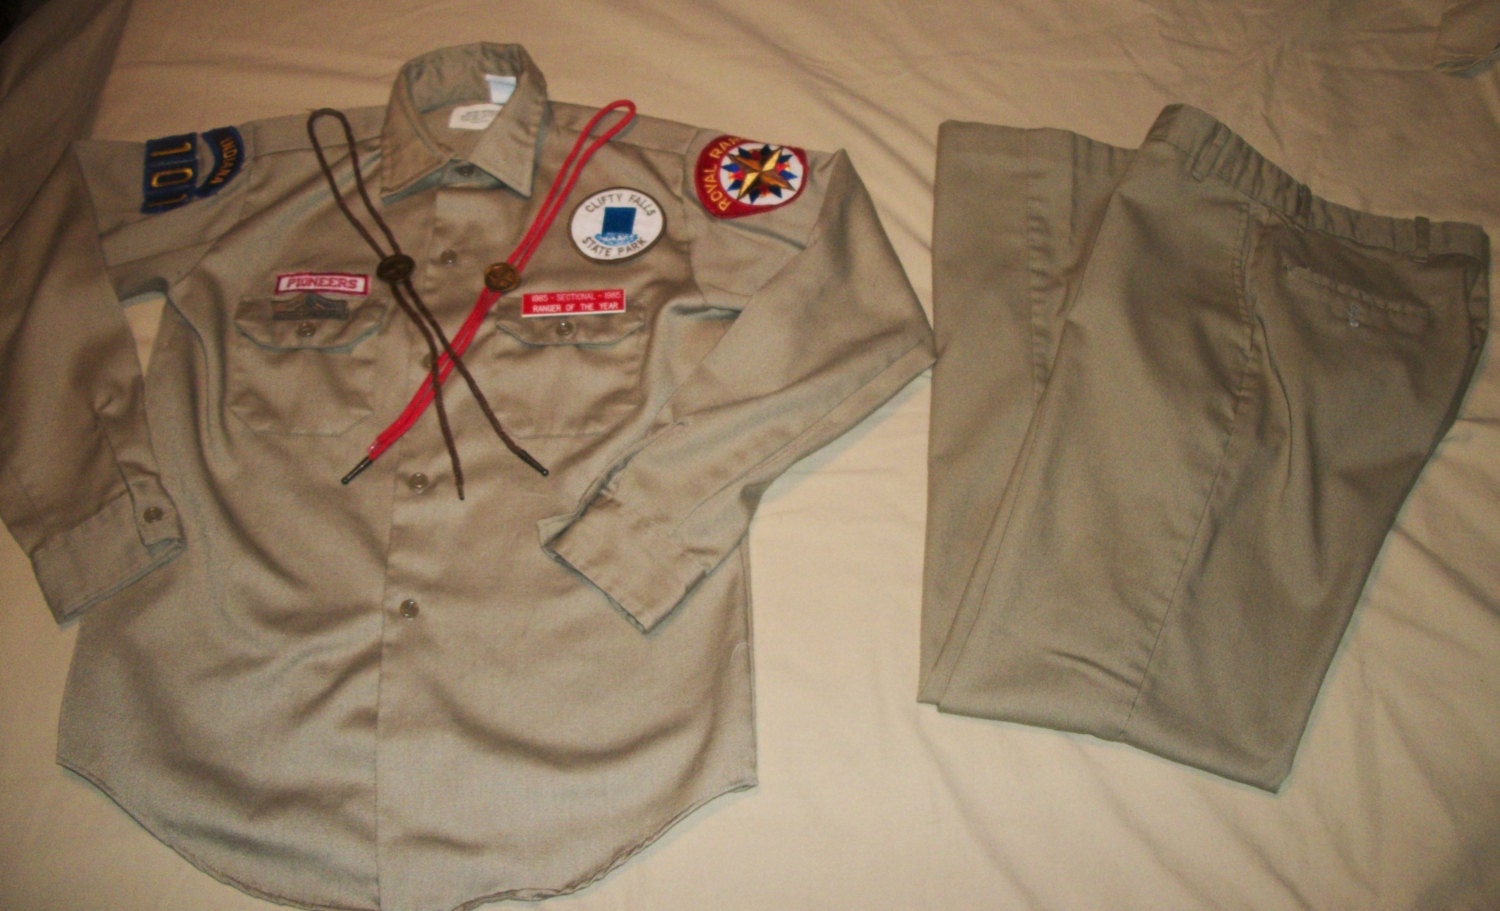 royal ranger uniform patch placement